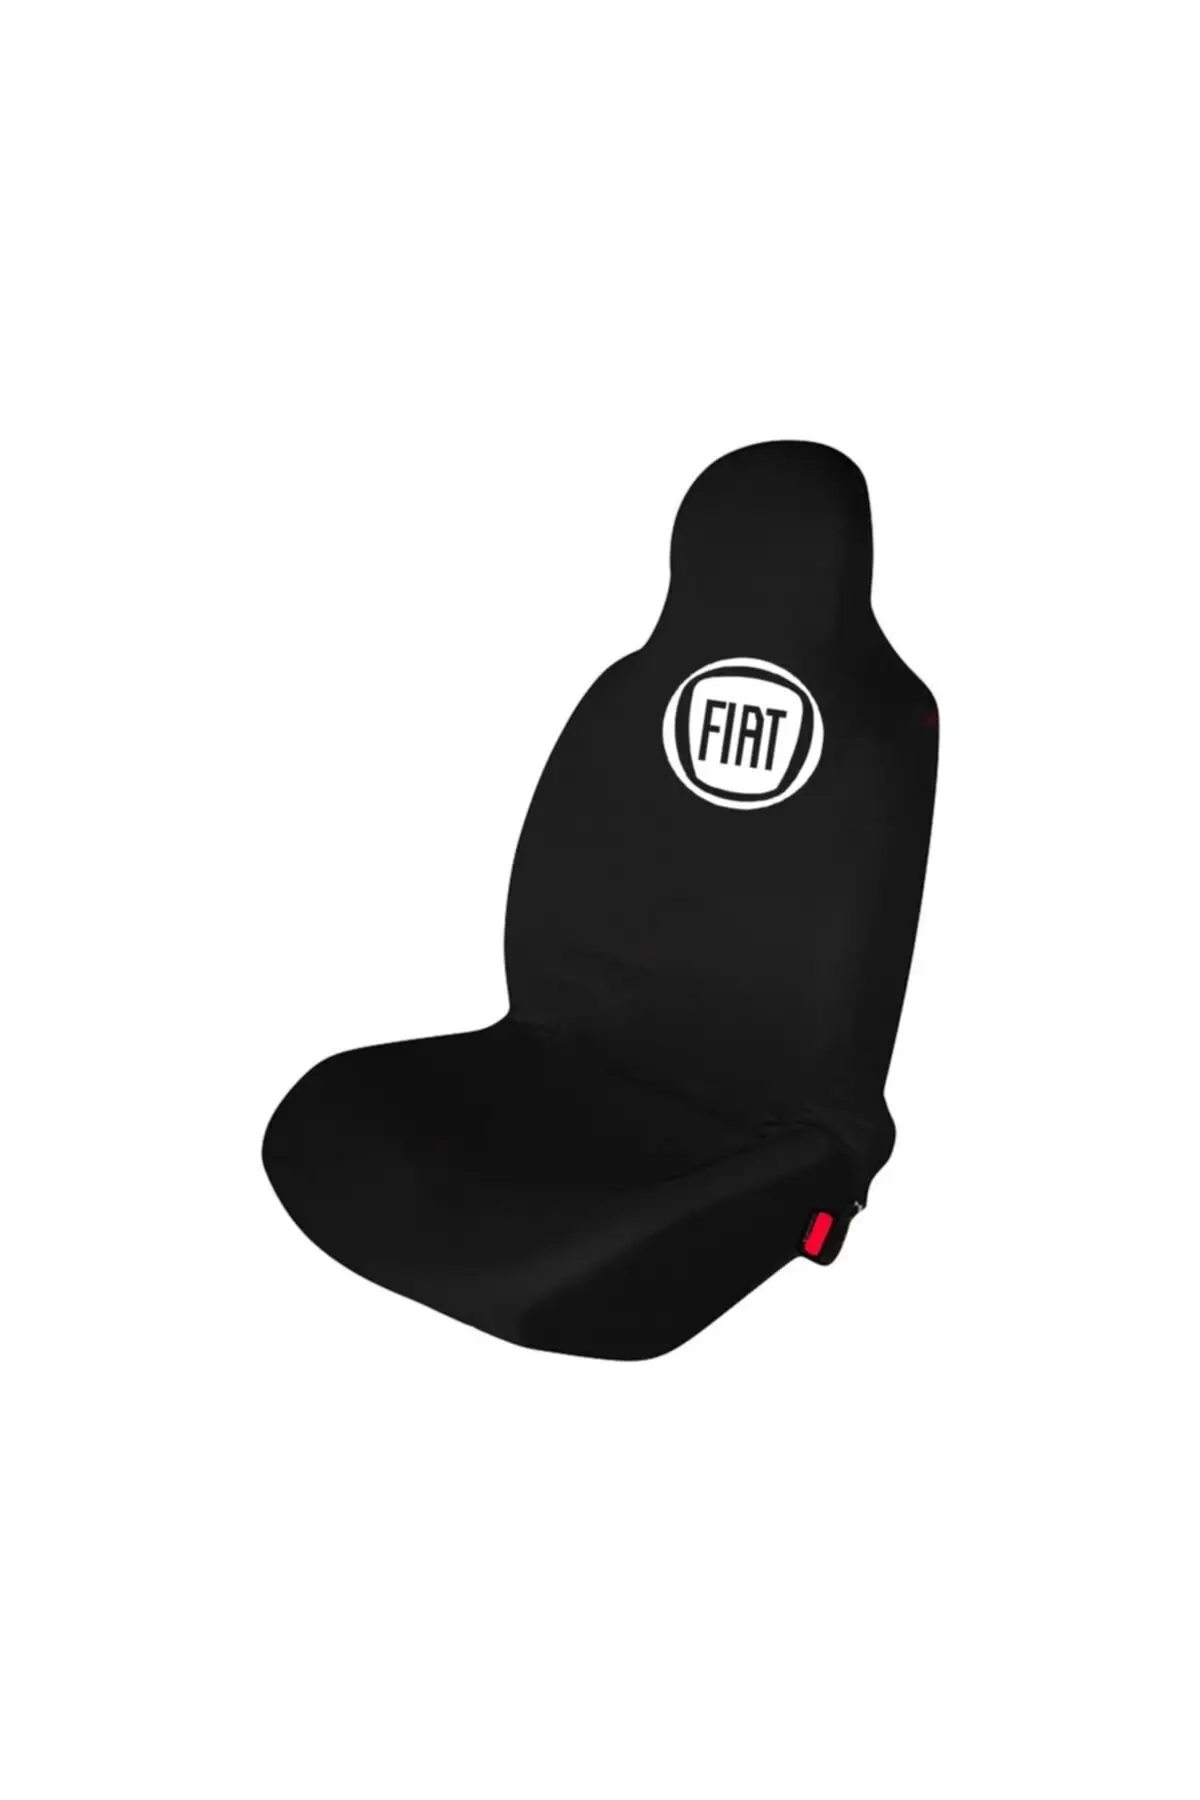 

Чехол для автомобильного сиденья Fiat Fiorino, защитный черный чехол из чесаного хлопка